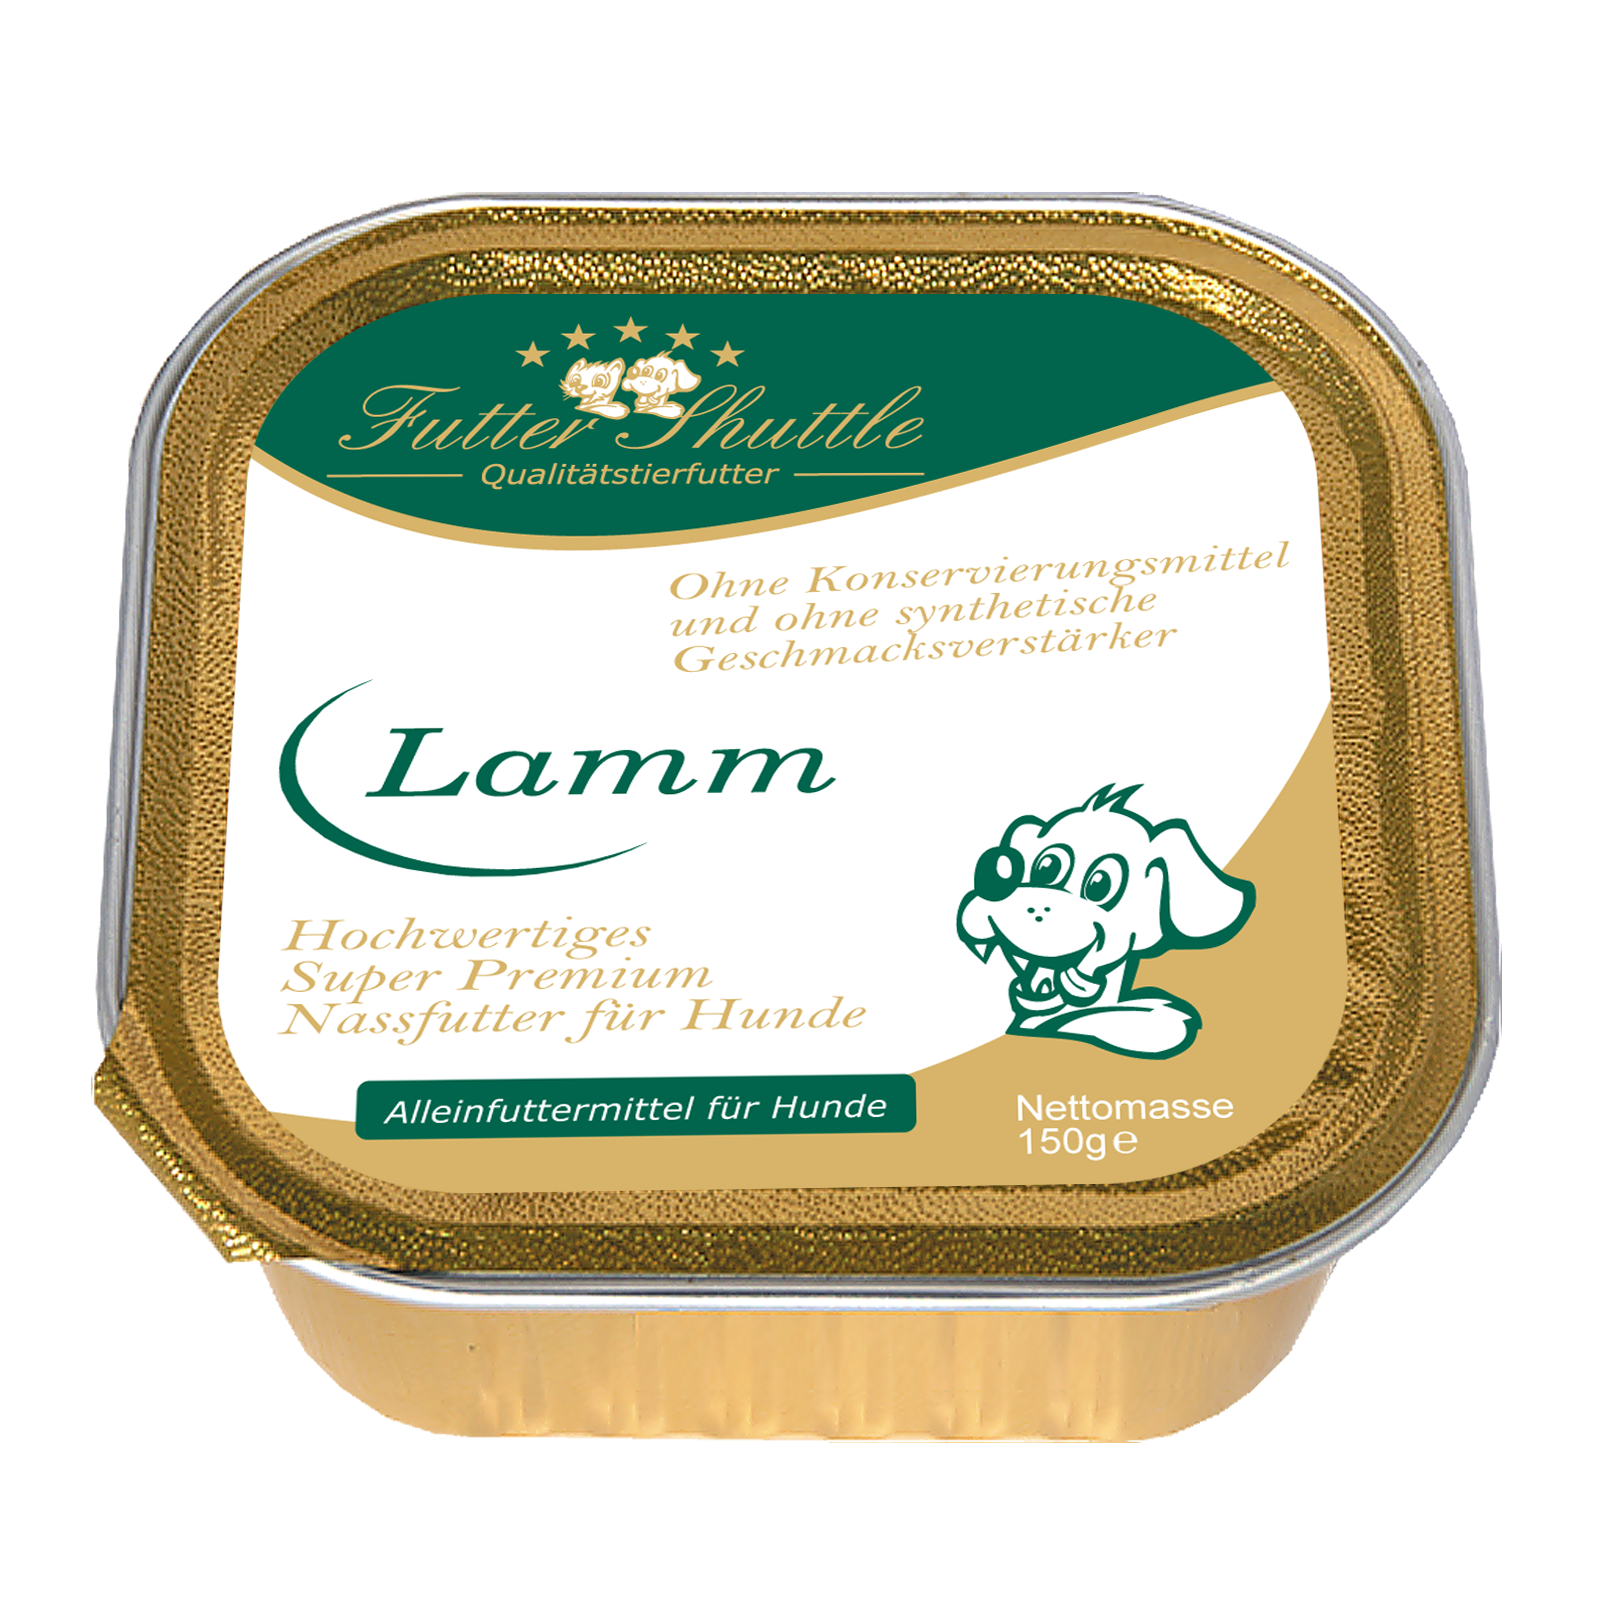 Hochwertiges Hunde Nassfutter mit Lamm. Super Premium Nassfutter der höchsten Güte in praktischer 150g Schale